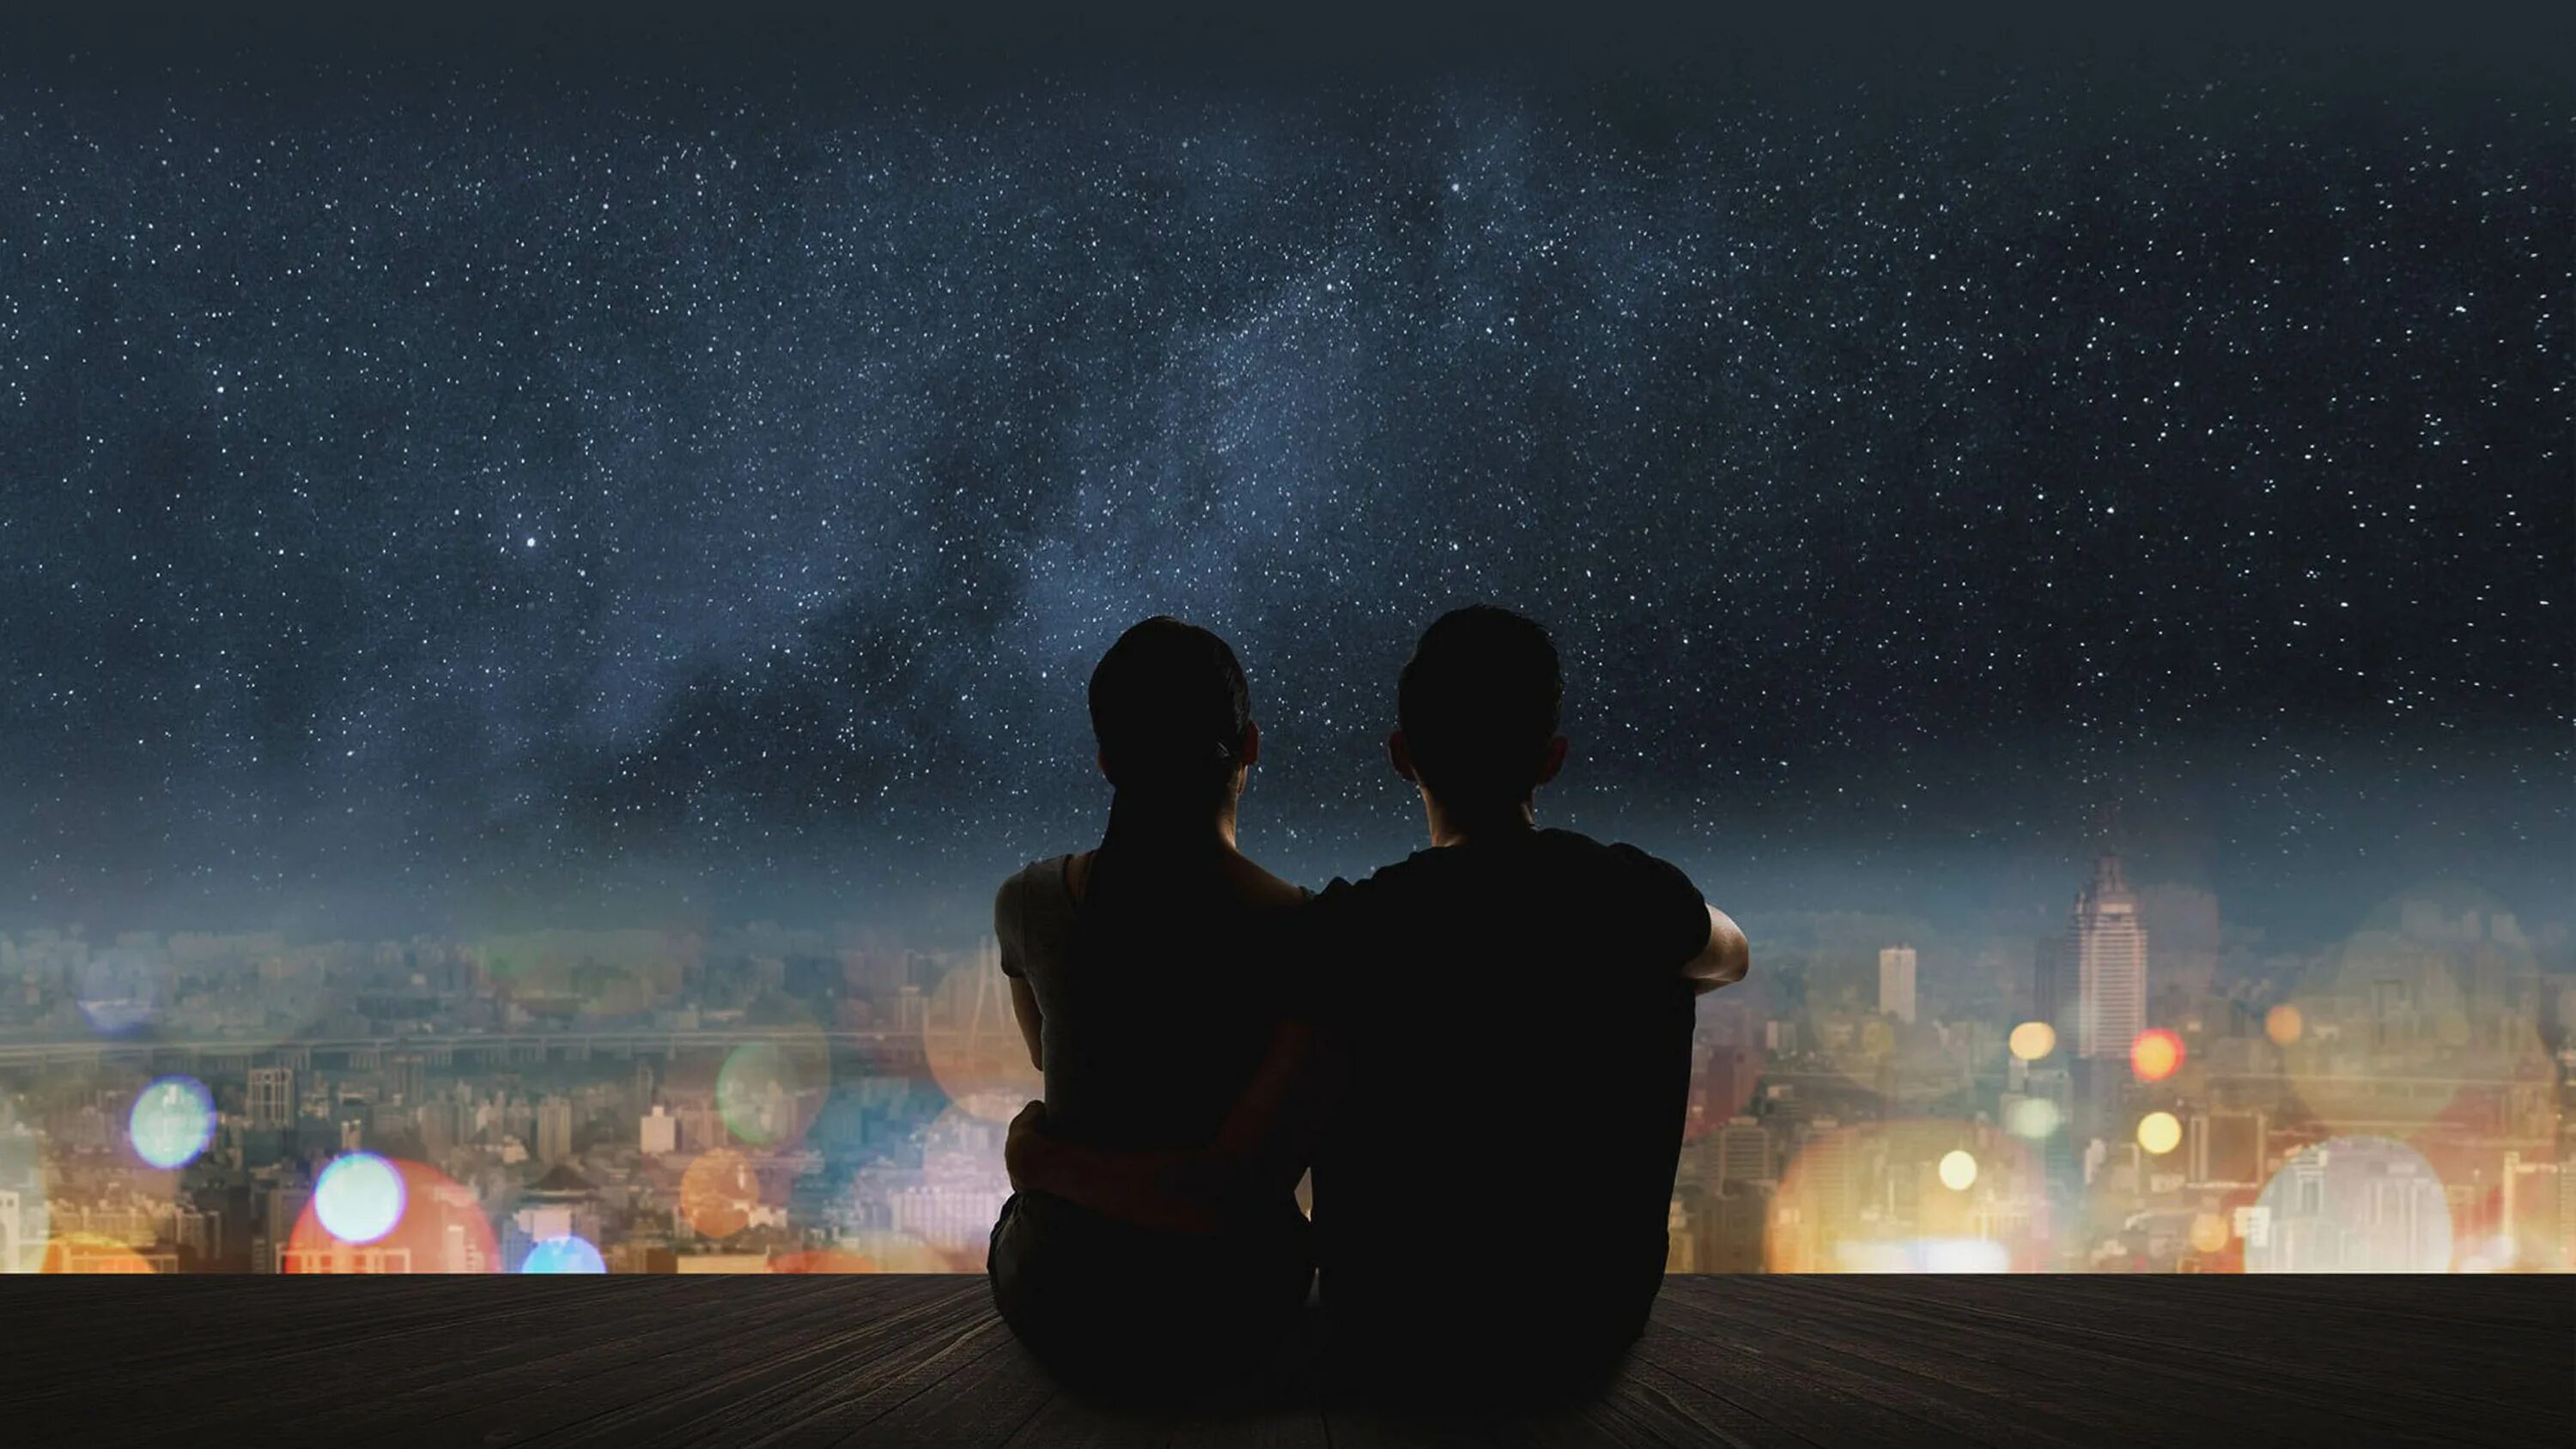 Песня мы где то на ночном. Пара на фоне ночного неба. Звездное небо и влюбленные. Пара на фоне ночи. Пара на фоне звездного неба.